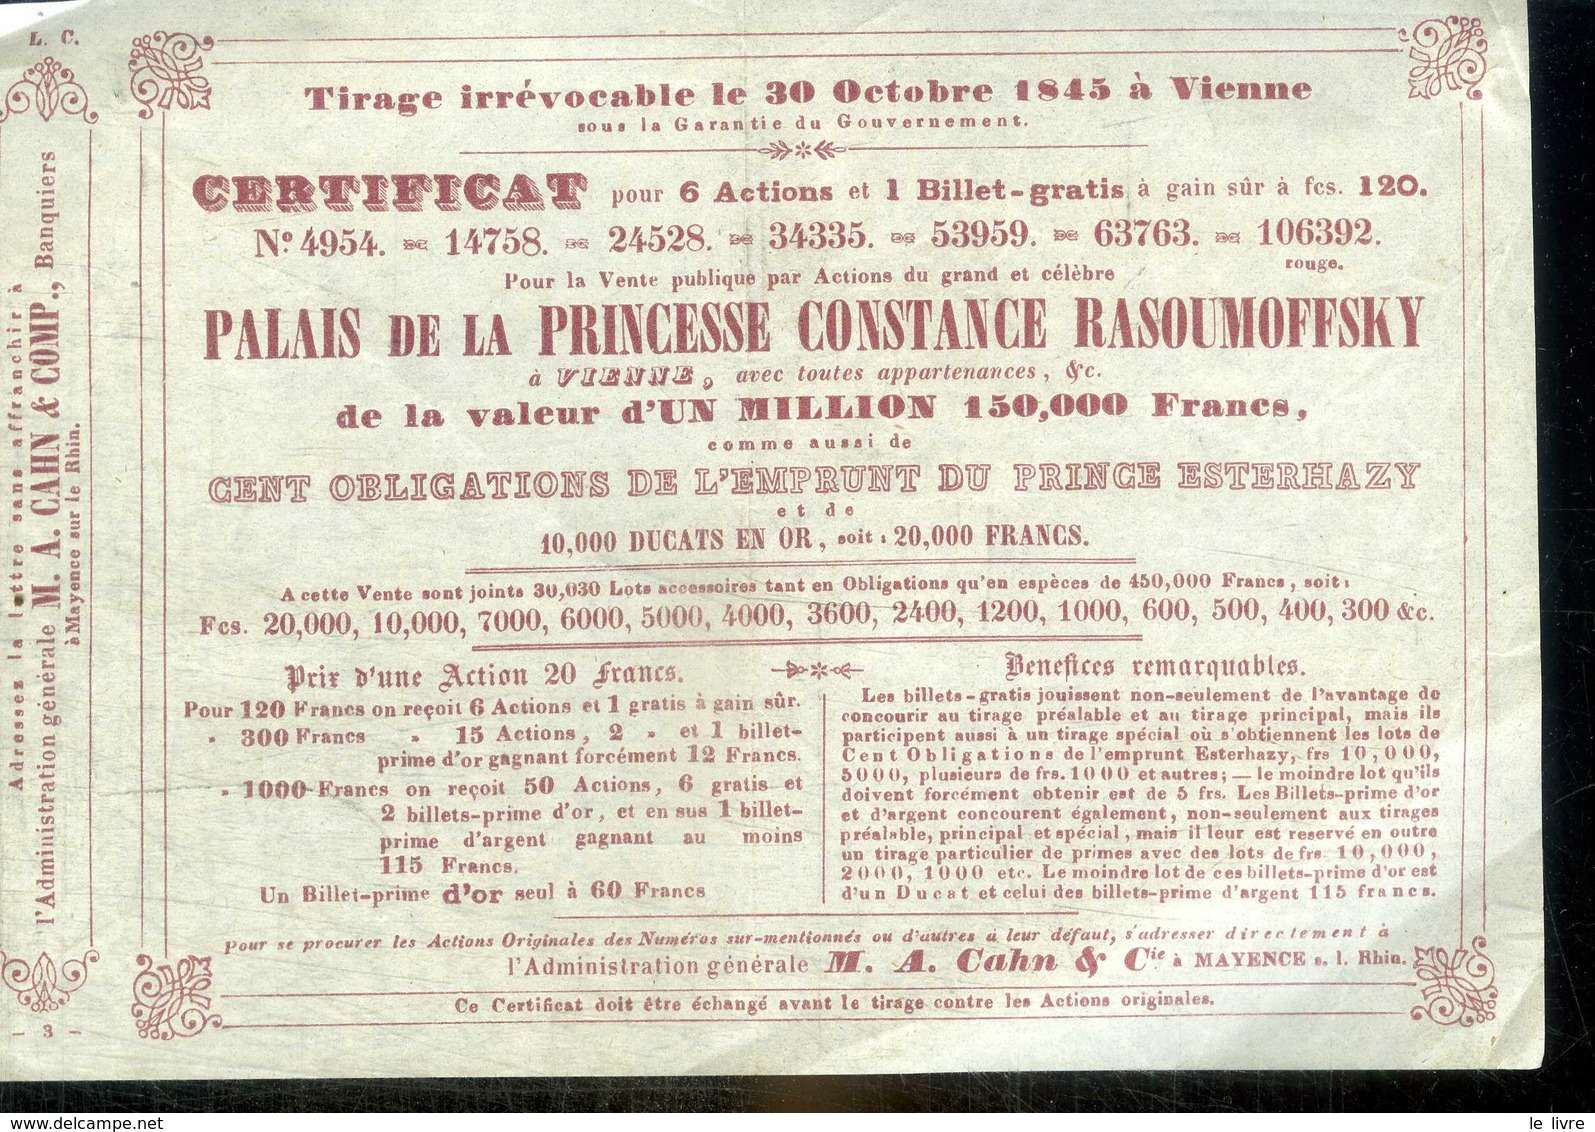 AUTRICHE VIENNE 1845. CERTIFICAT DE 6 ACTION VENTE PUBLIQUE DU PALAIS DE LA PRINCESSE CONSTANCE RASOUMOFFSKY